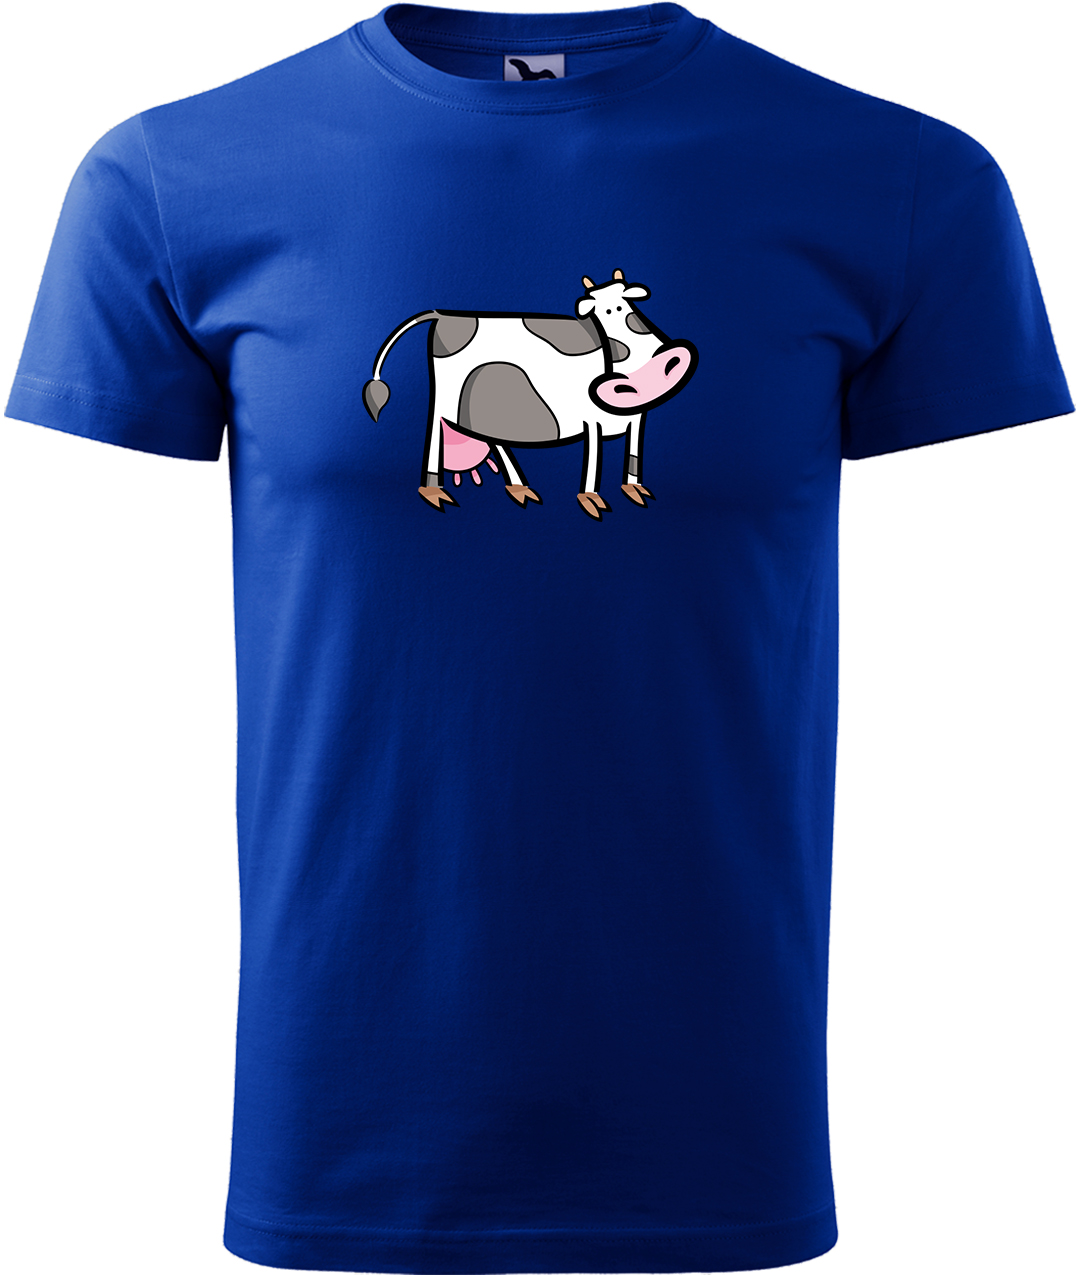 Pánské tričko s krávou - Kravička Velikost: M, Barva: Královská modrá (05), Střih: pánský